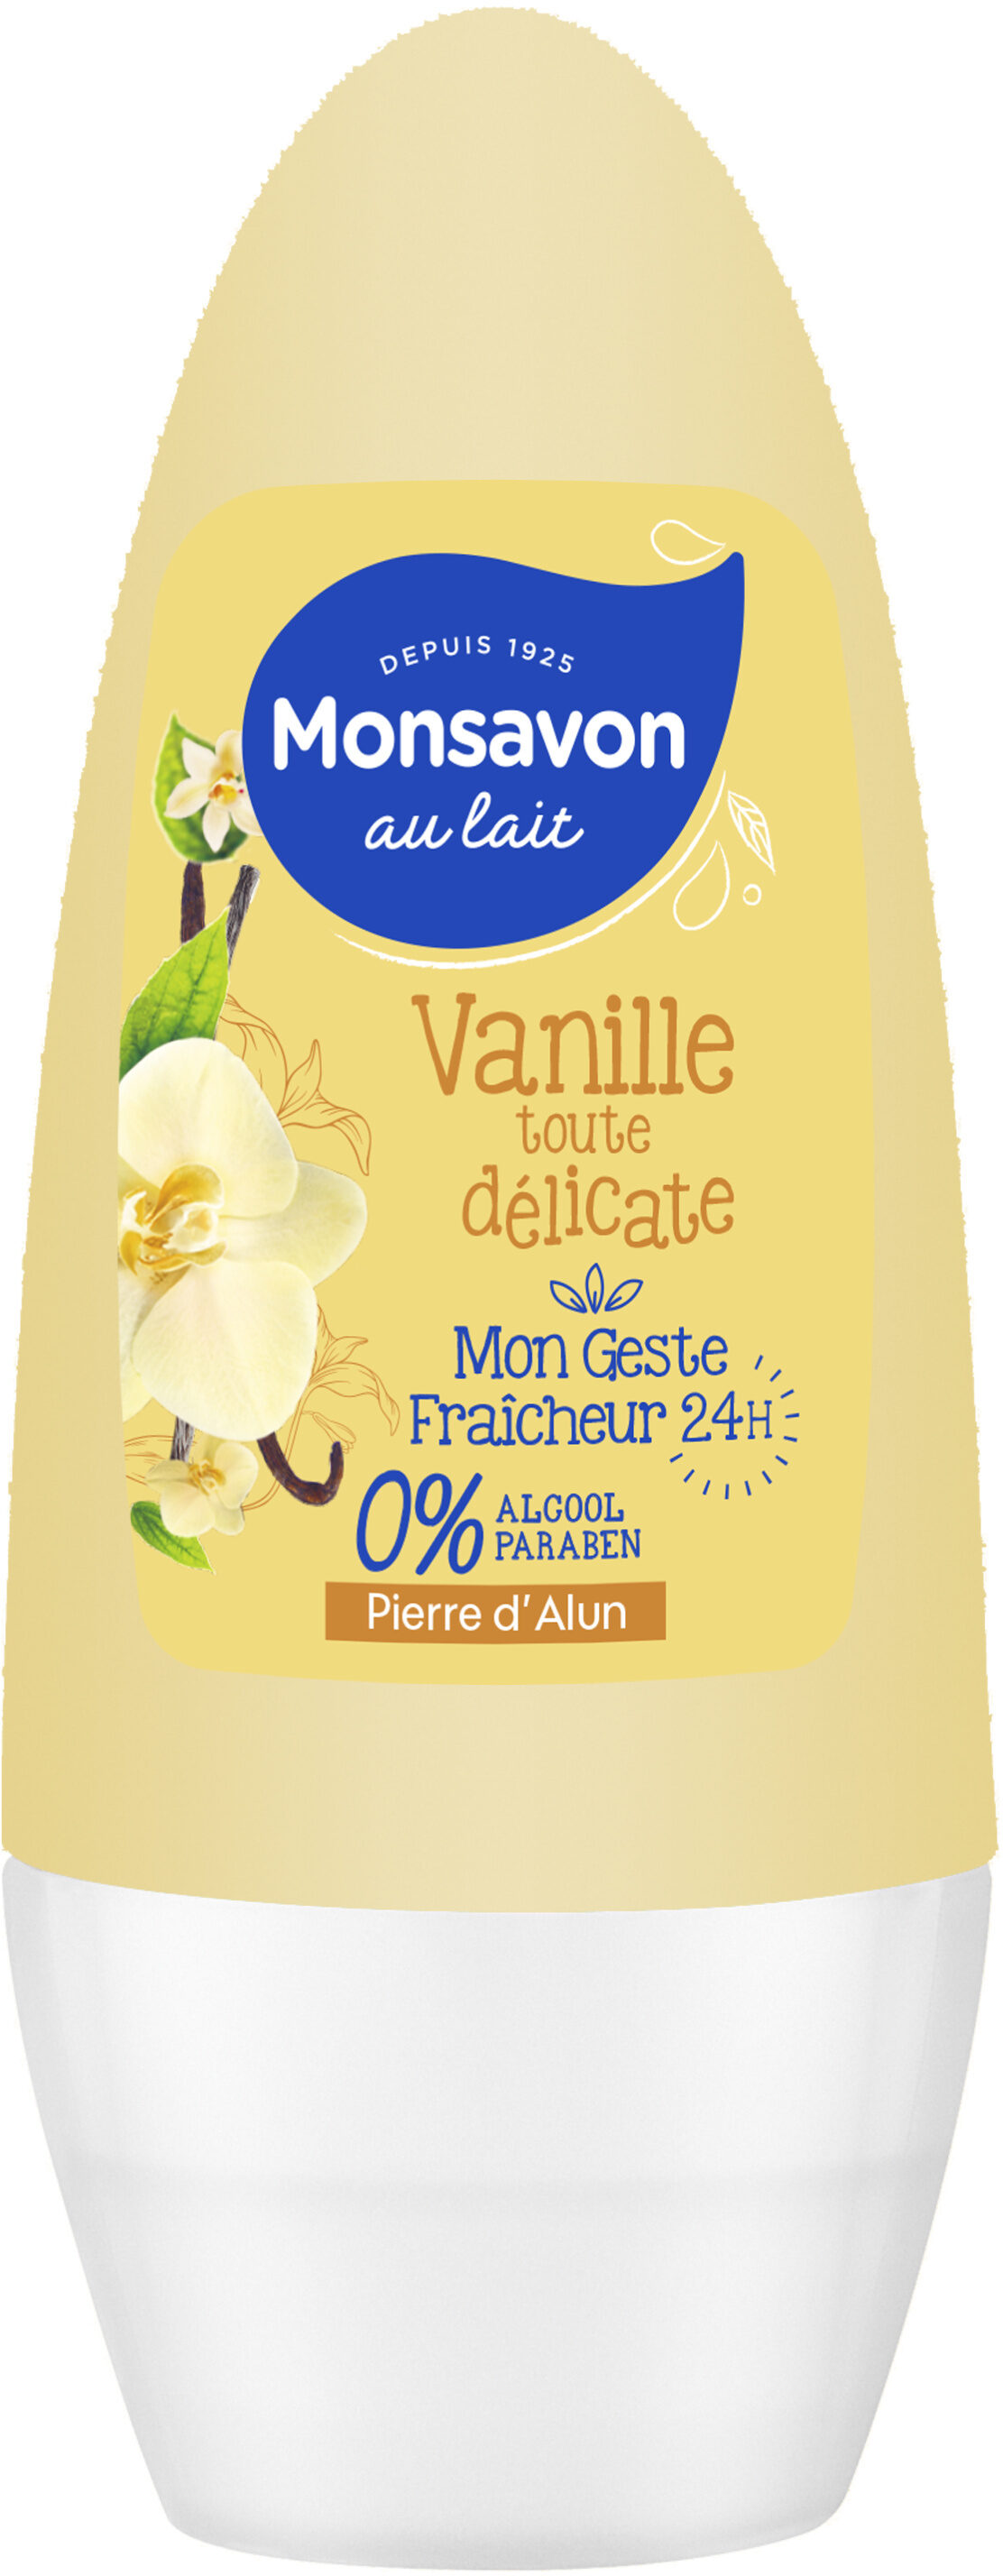 Monsavon Déodorant Femme Bille Vanille Toute Délicate 50ml - Product - fr